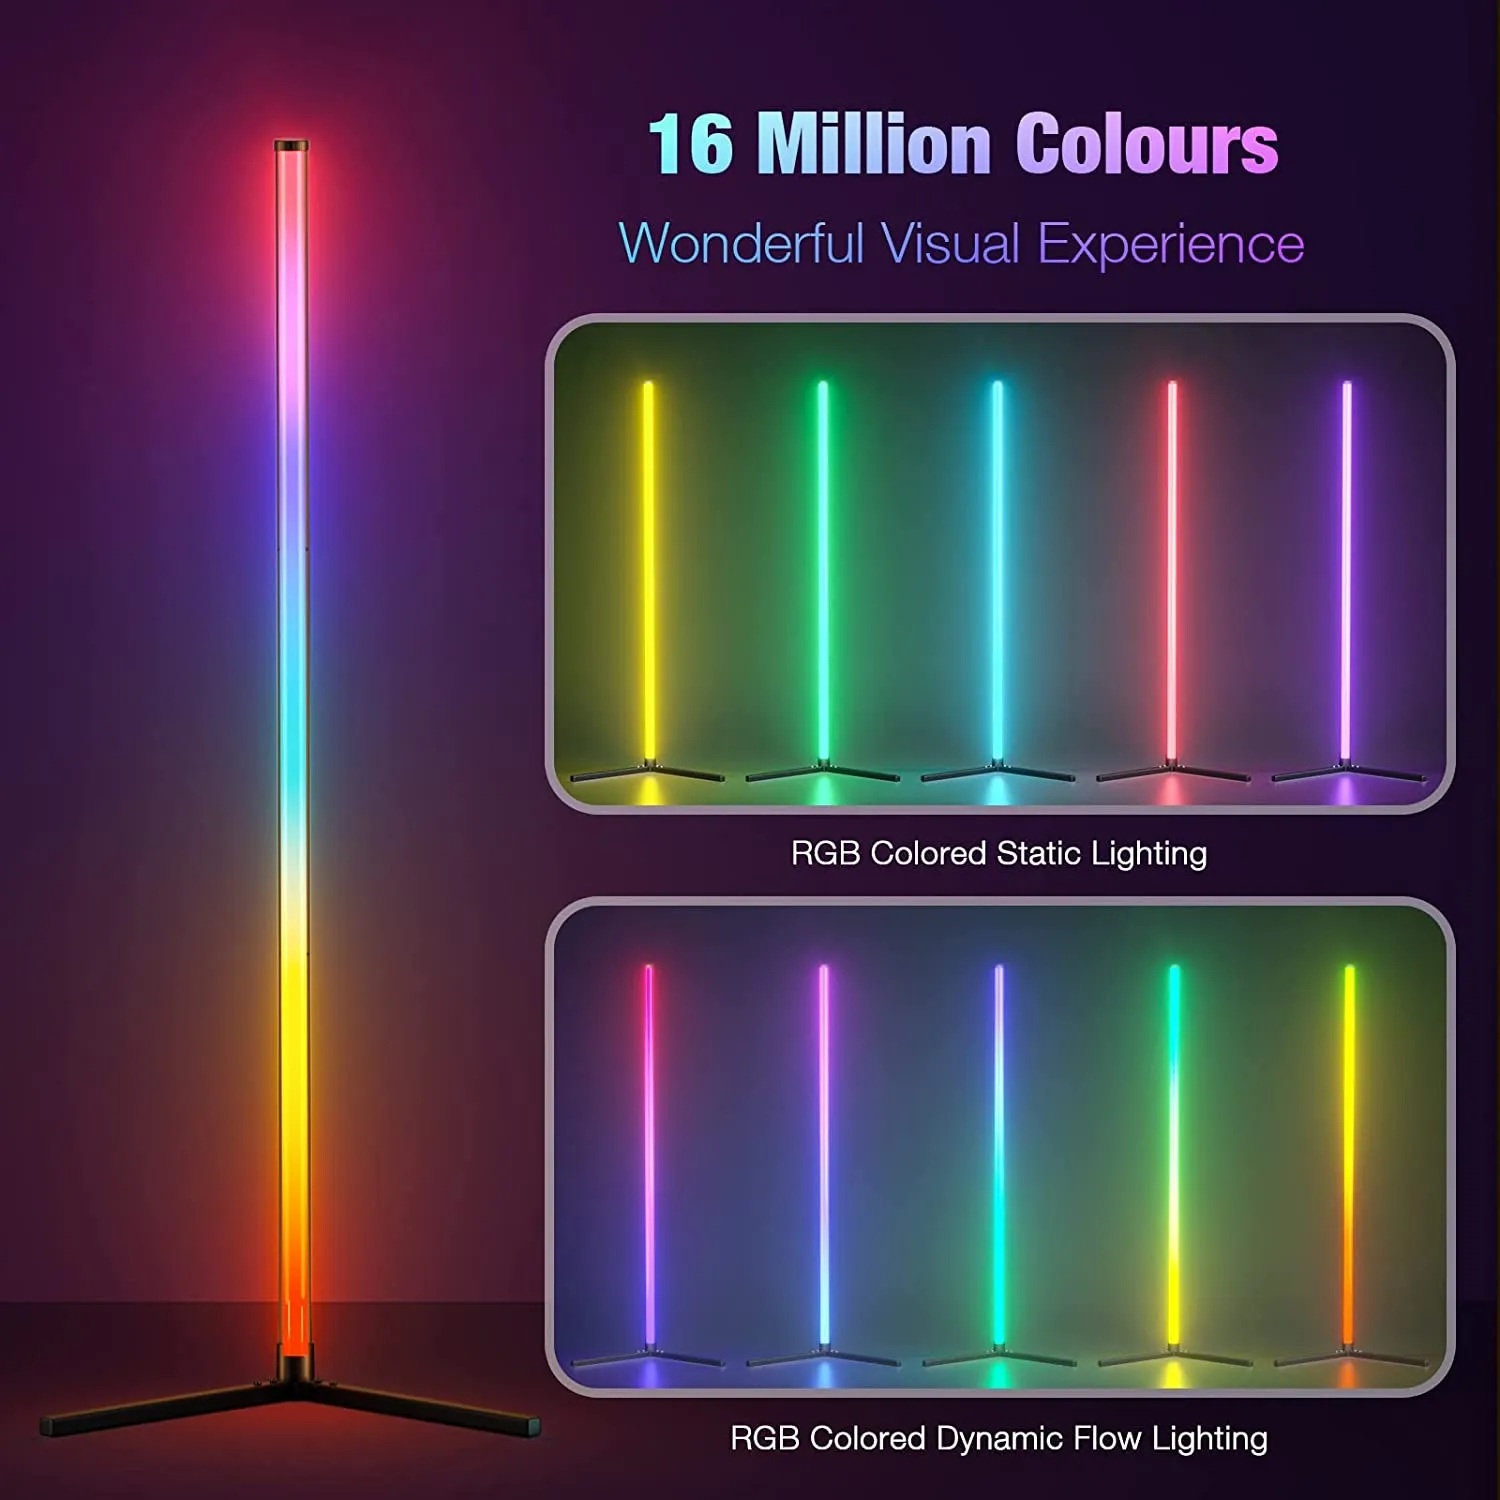 Lampadaire intelligent RGB couleur de rêve, avec synchronisation de musique, lumière d'ambiance moderne à 16 millions de couleurs changeantes, avec télécommande APP